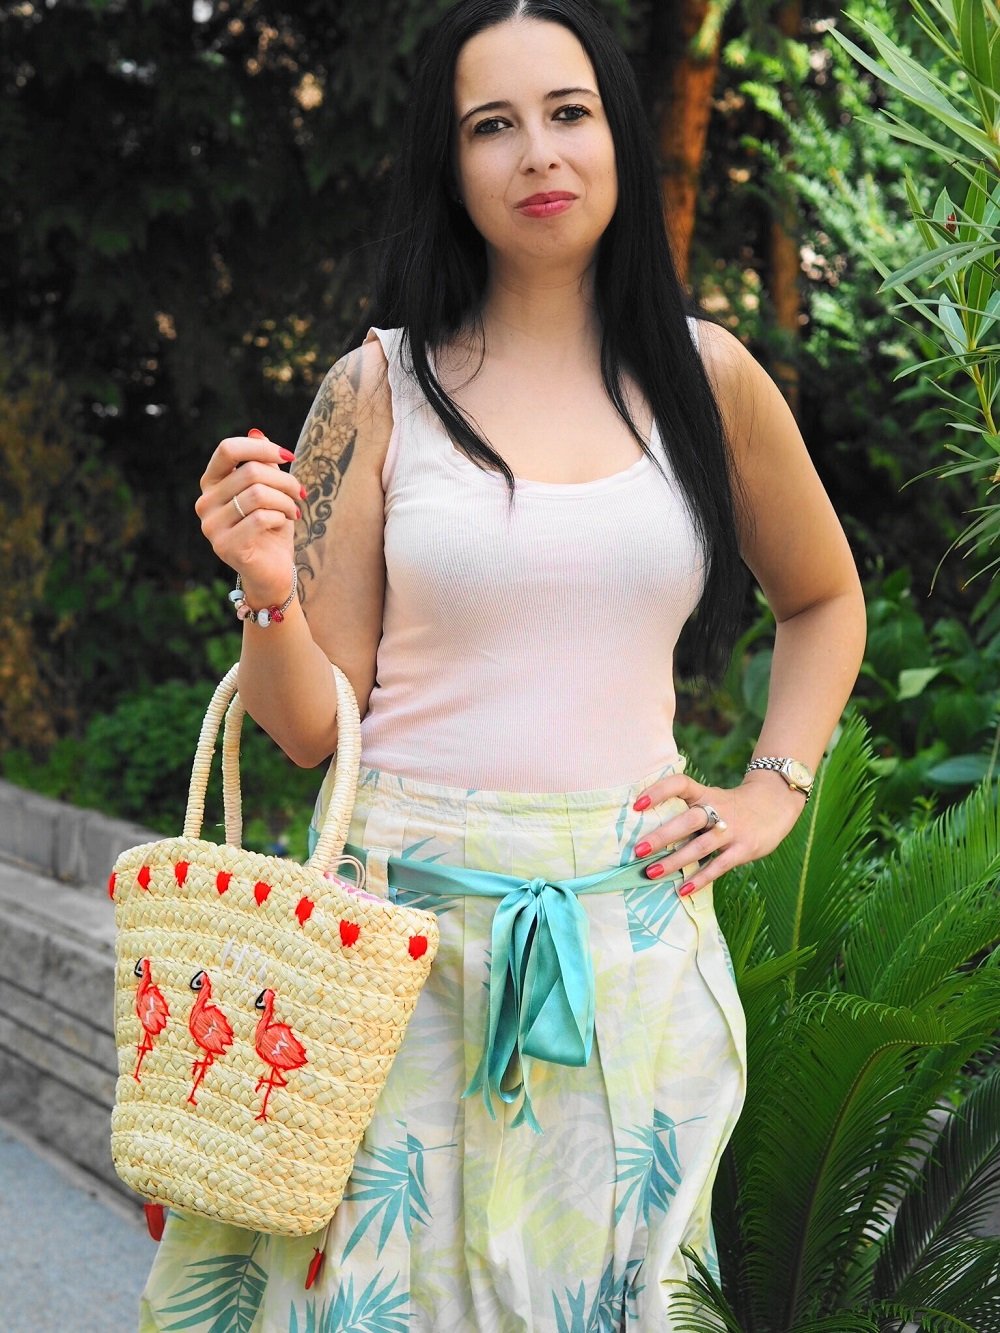 Heute zeige ich euch in meinem Blog einen hübschen Tropical Look mit Palmenprint Rock und mit meiner süßen Flamingo Korbtasche und zeige euch kultige IT Bags